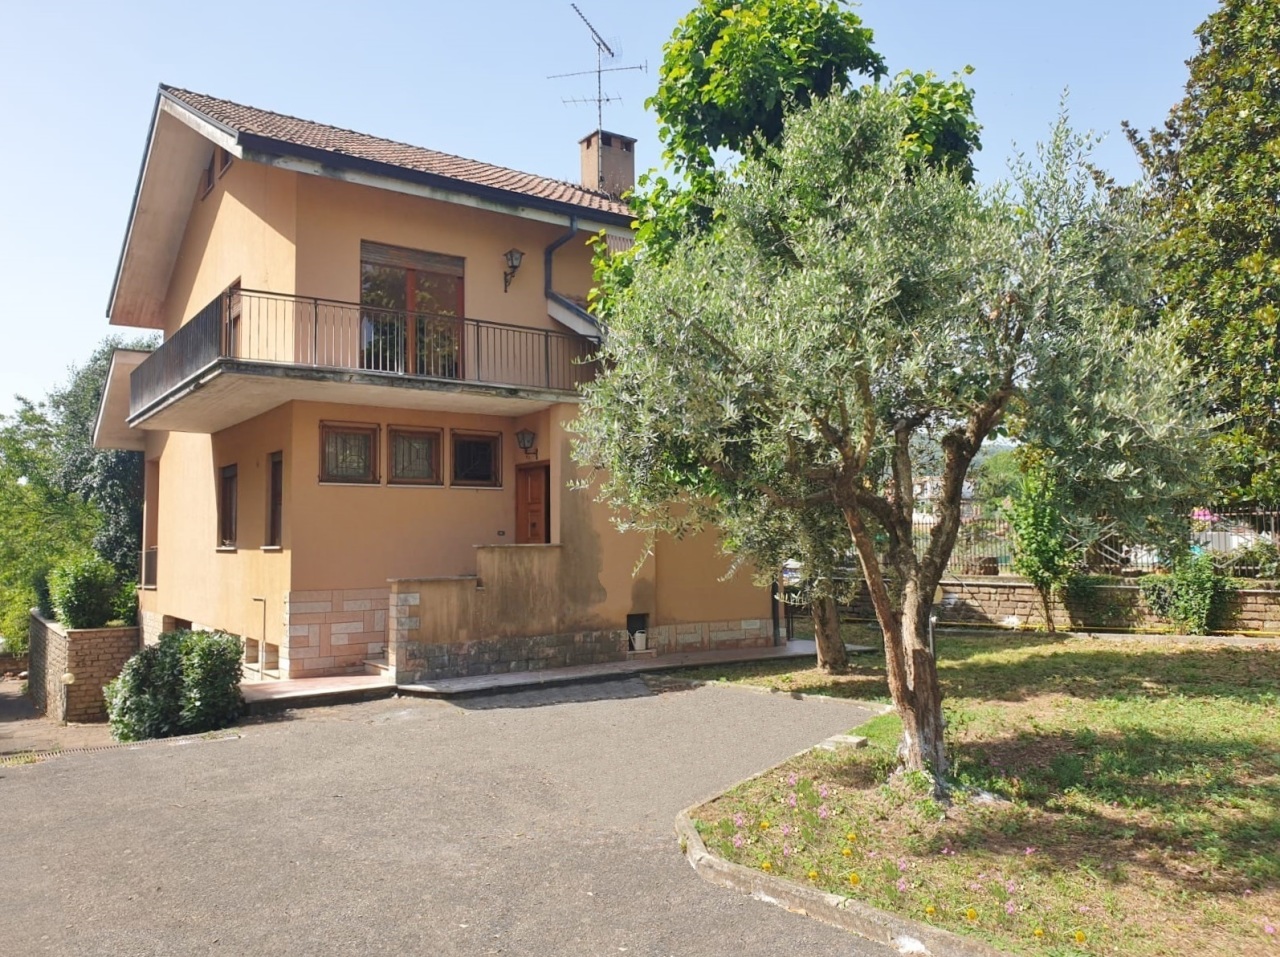 Villa in vendita a San Cesareo, 9999 locali, prezzo € 329.000 | PortaleAgenzieImmobiliari.it